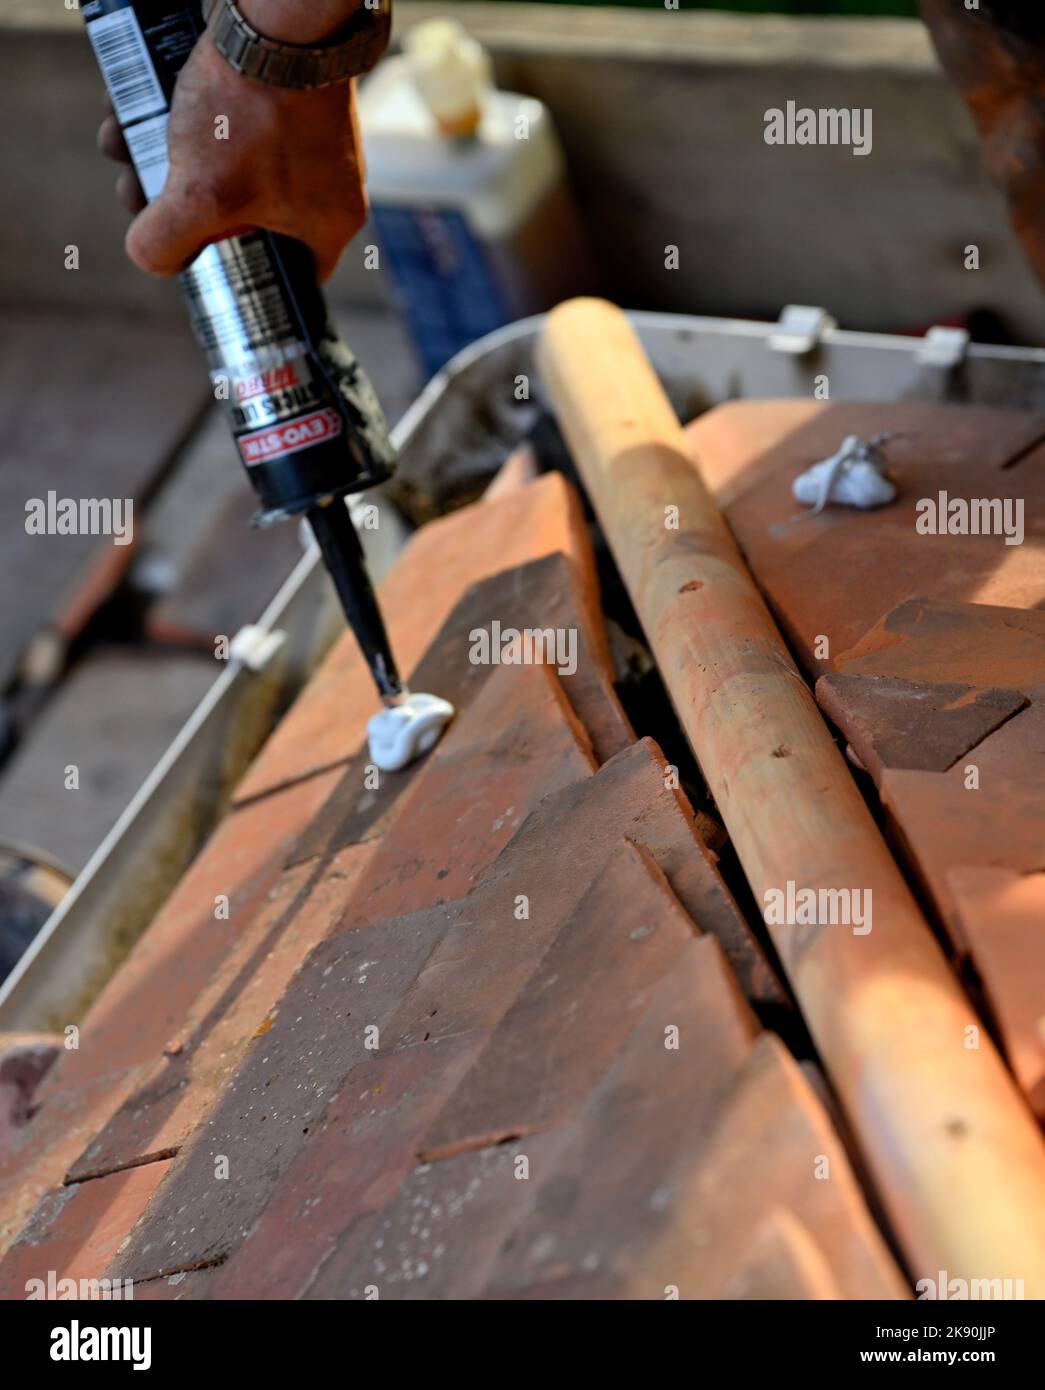 Dacharbeiten auf Lehm gekachelten Wohn-Walmdach, Anwendung von Klebstoff, um geschnittene Fliesen für die Montage Winkel geschnitten, um Hip-Raster zu halten Stockfoto